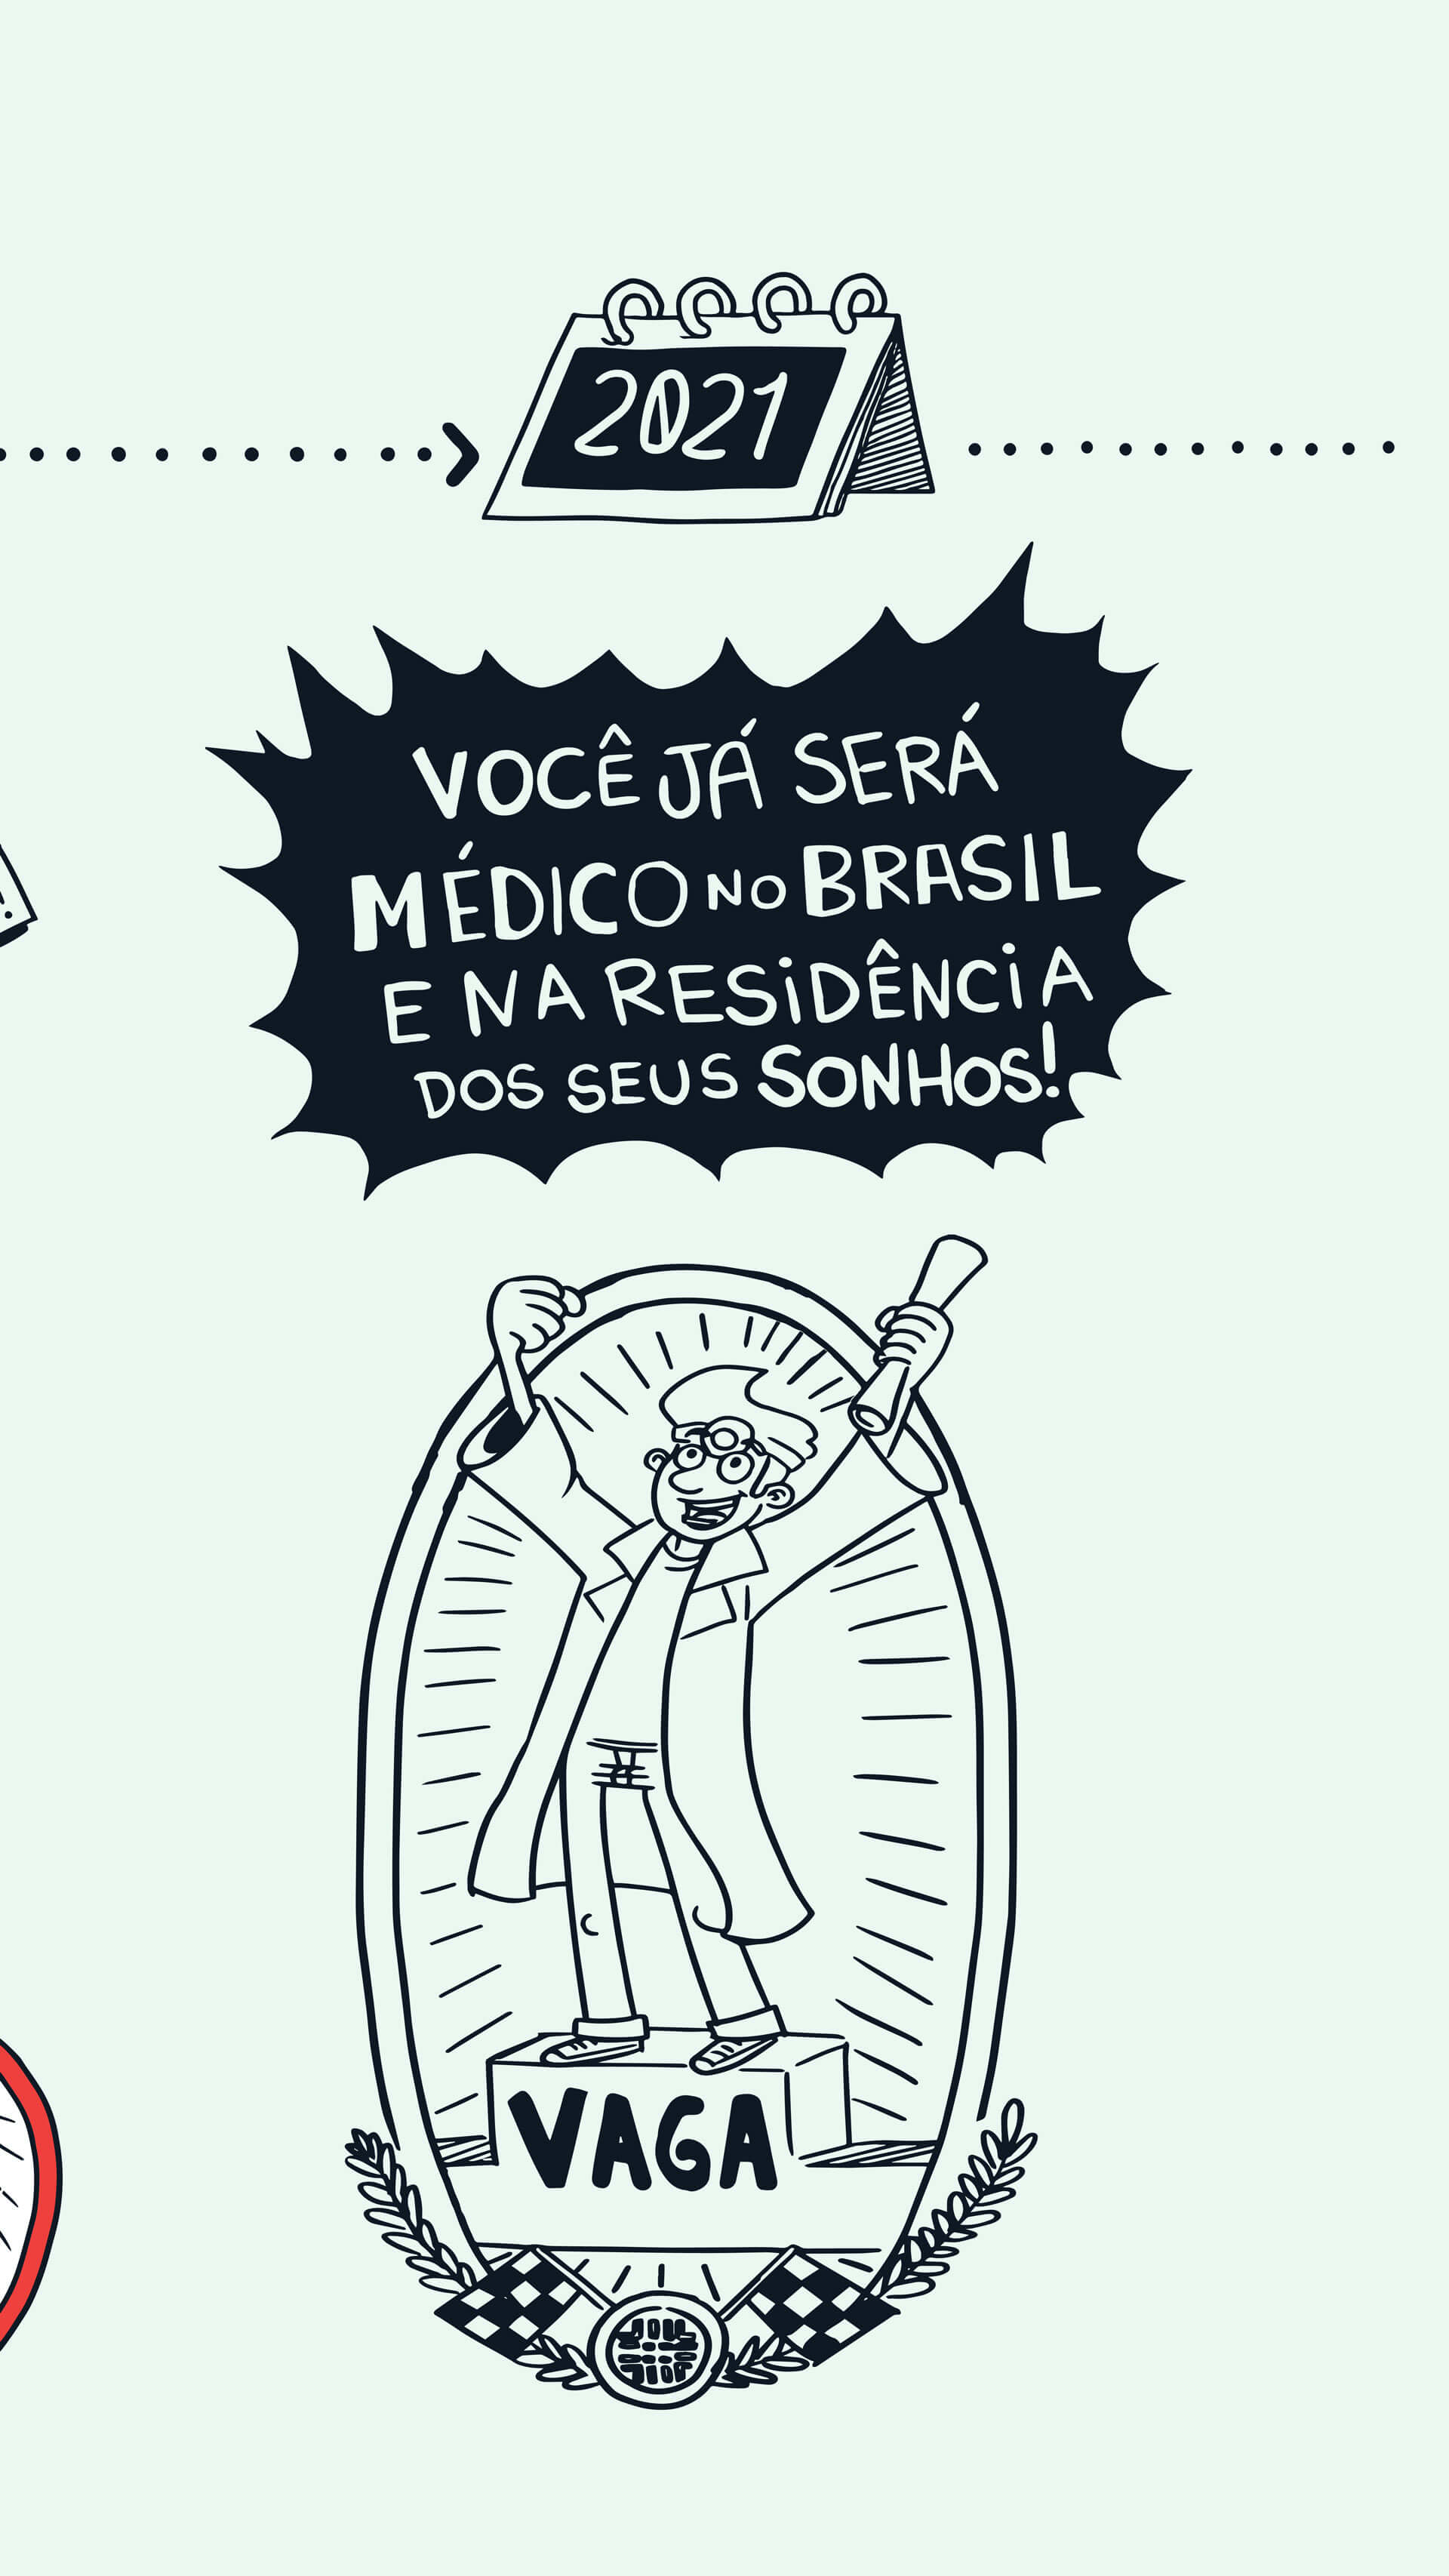 Você já será médico no Brasil 2021